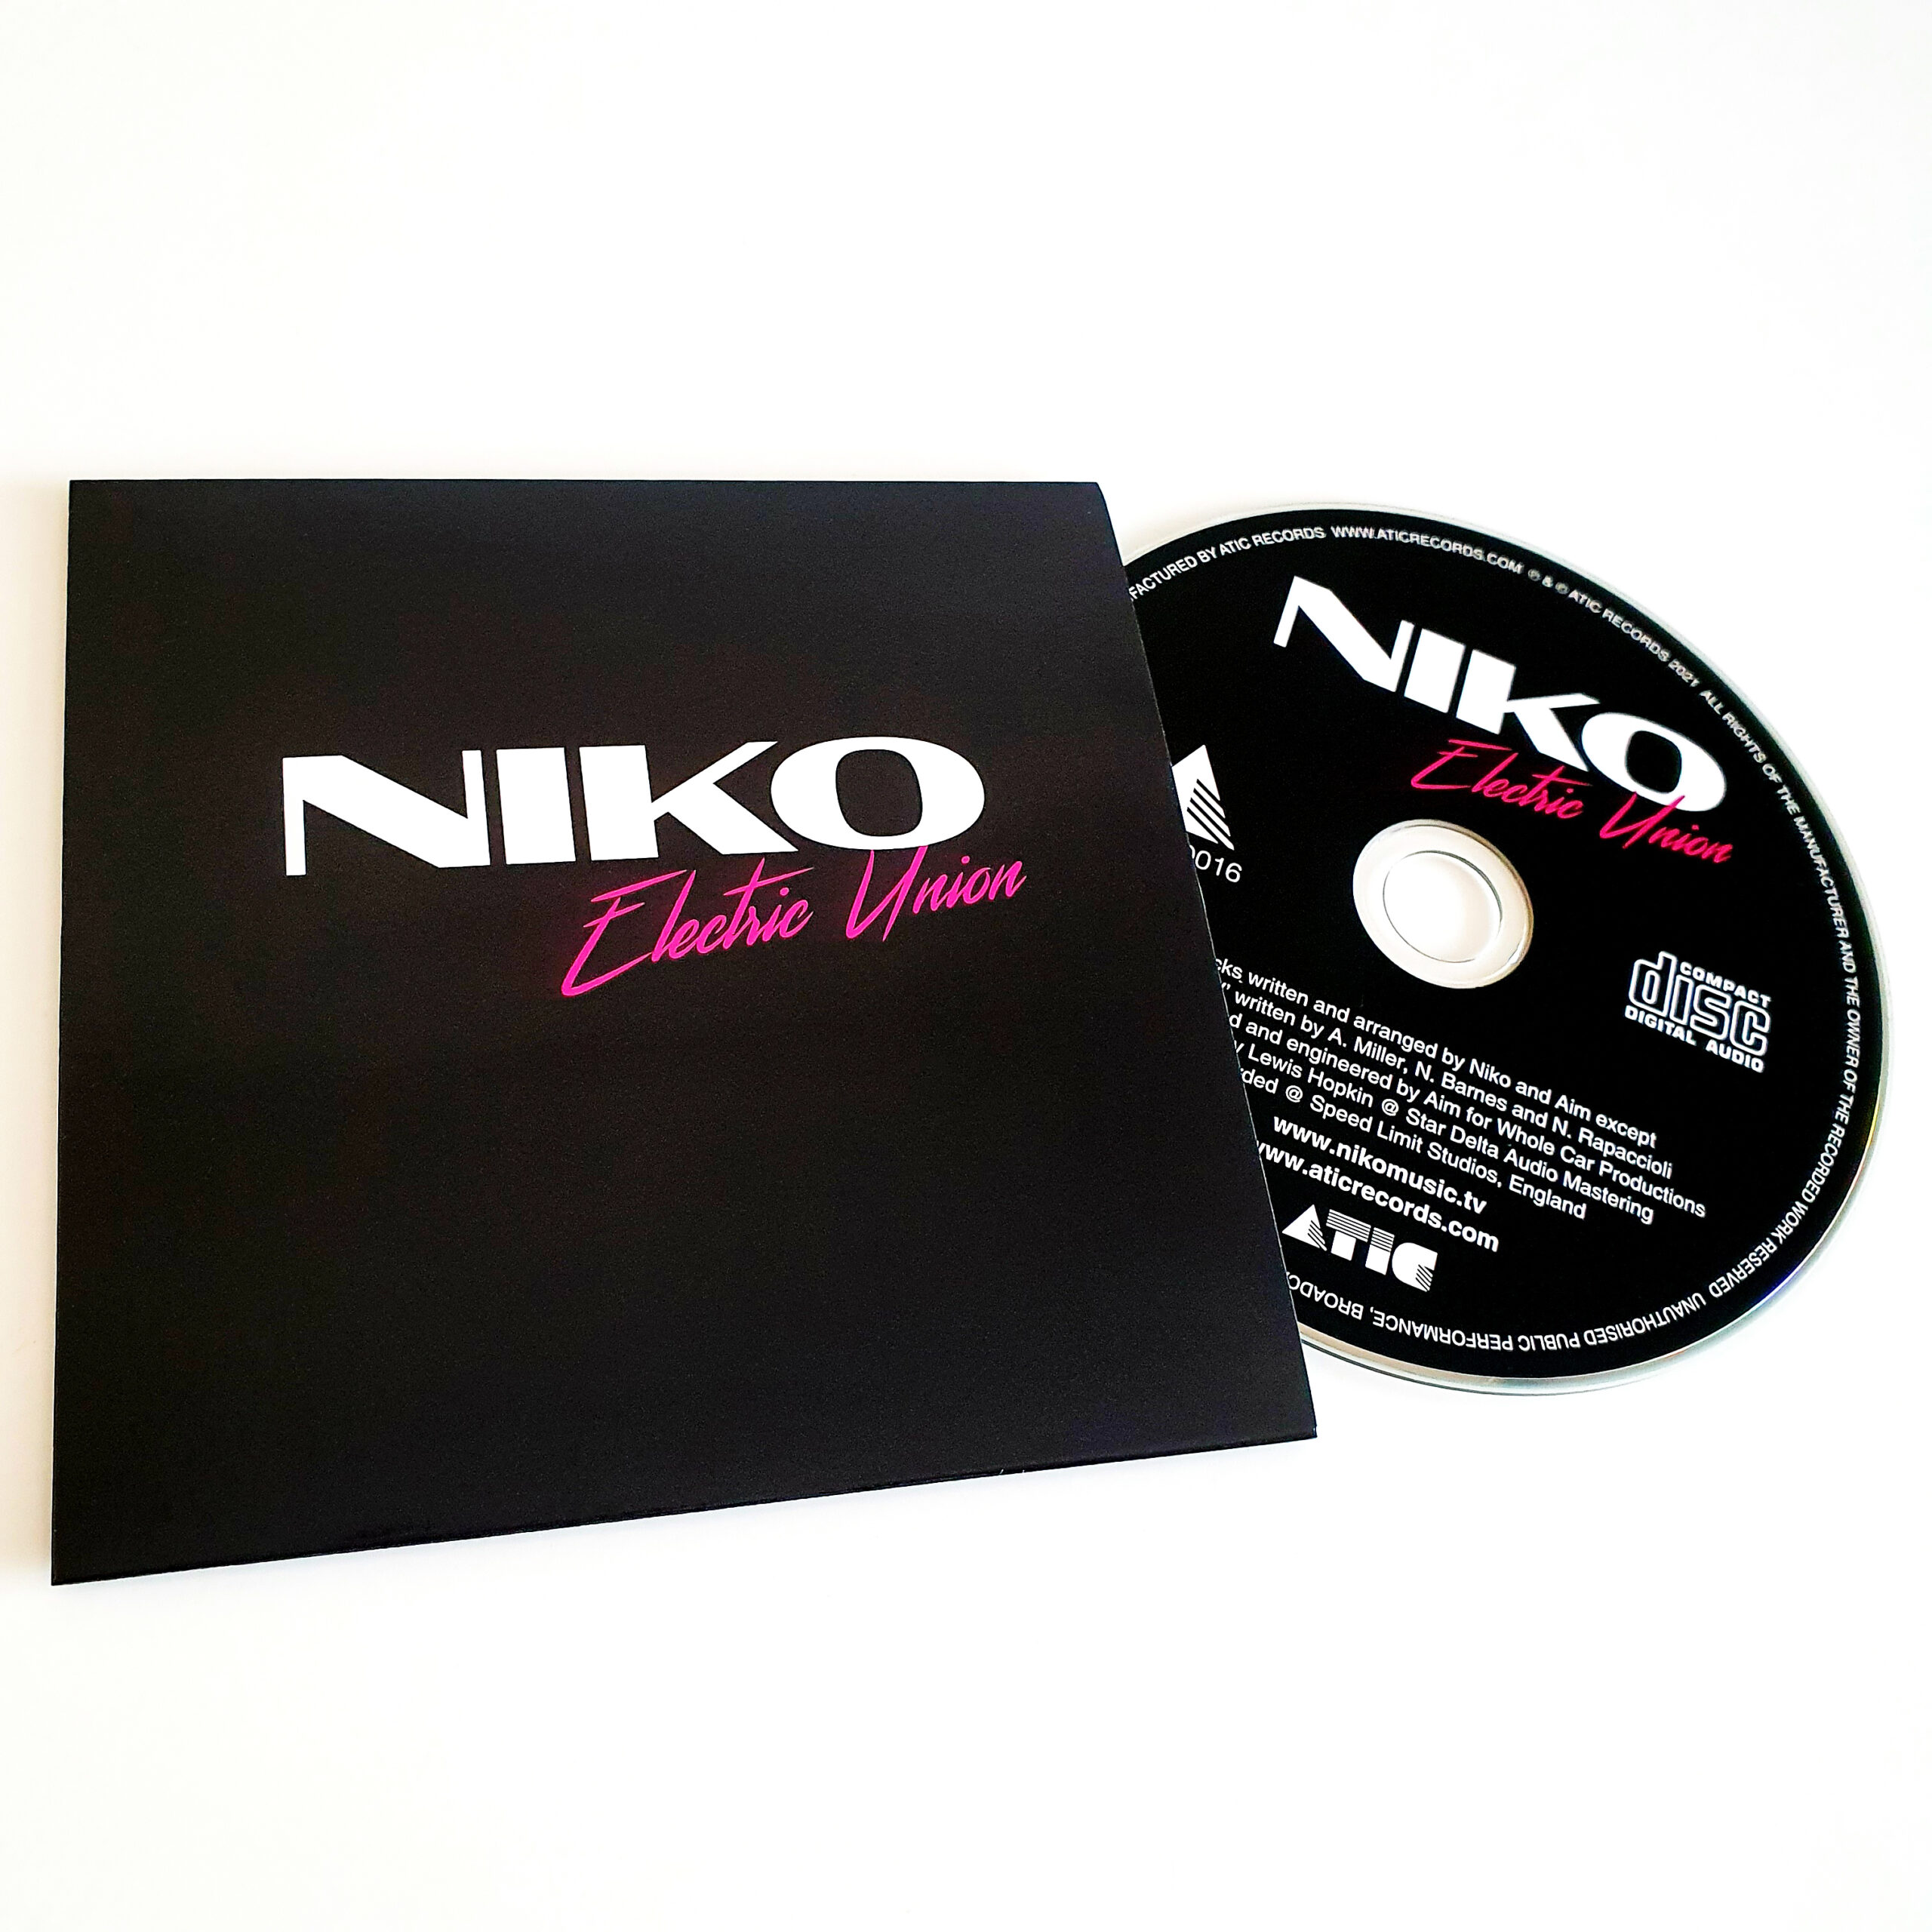 Niko – Electric Union | ATIC Records